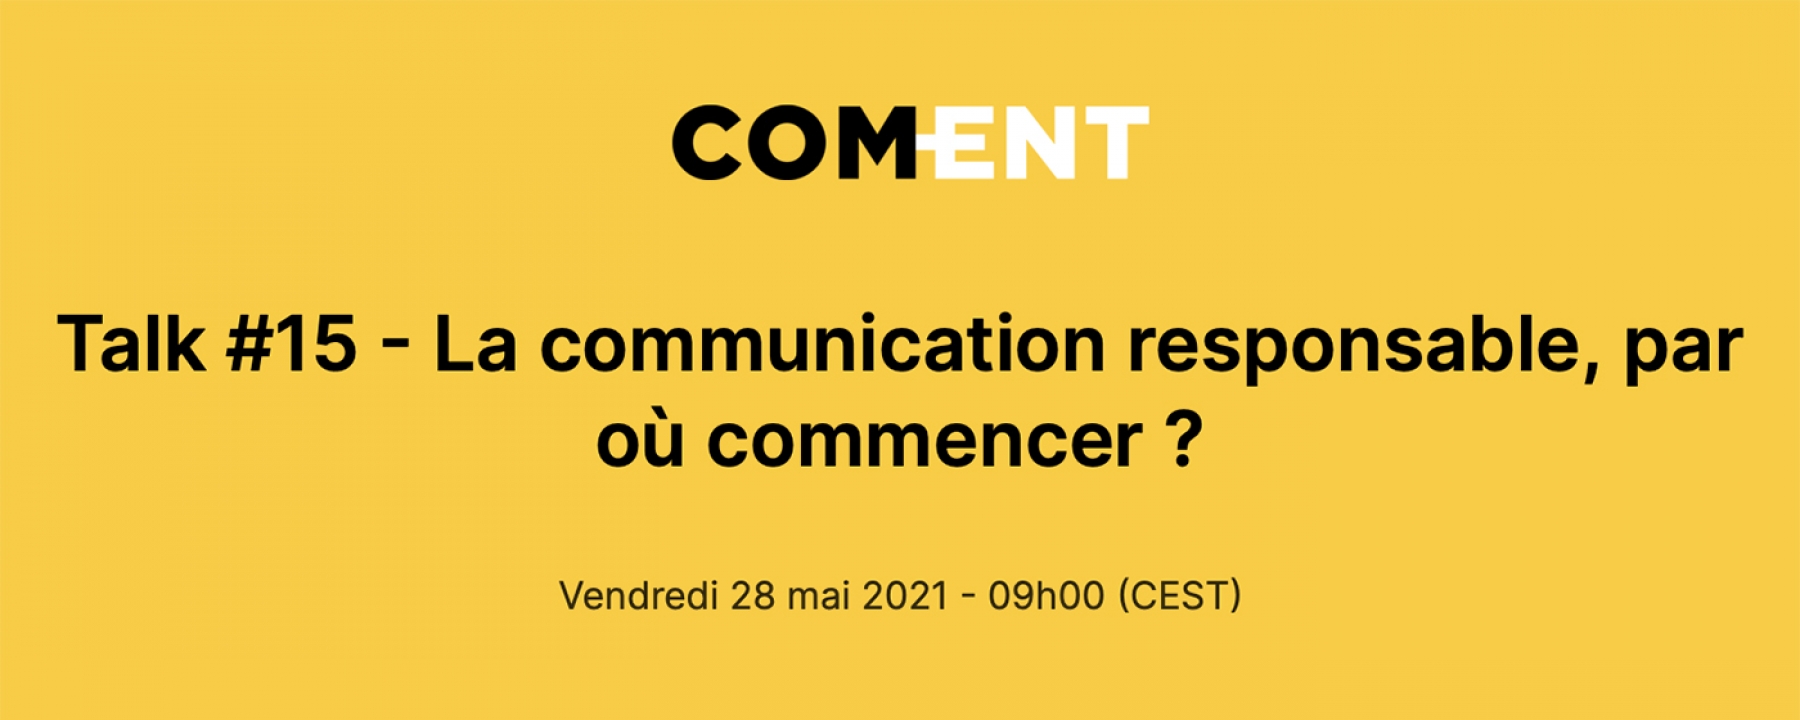 La communication responsable, par où commencer ? par COM-ENT le 28 mai 2021